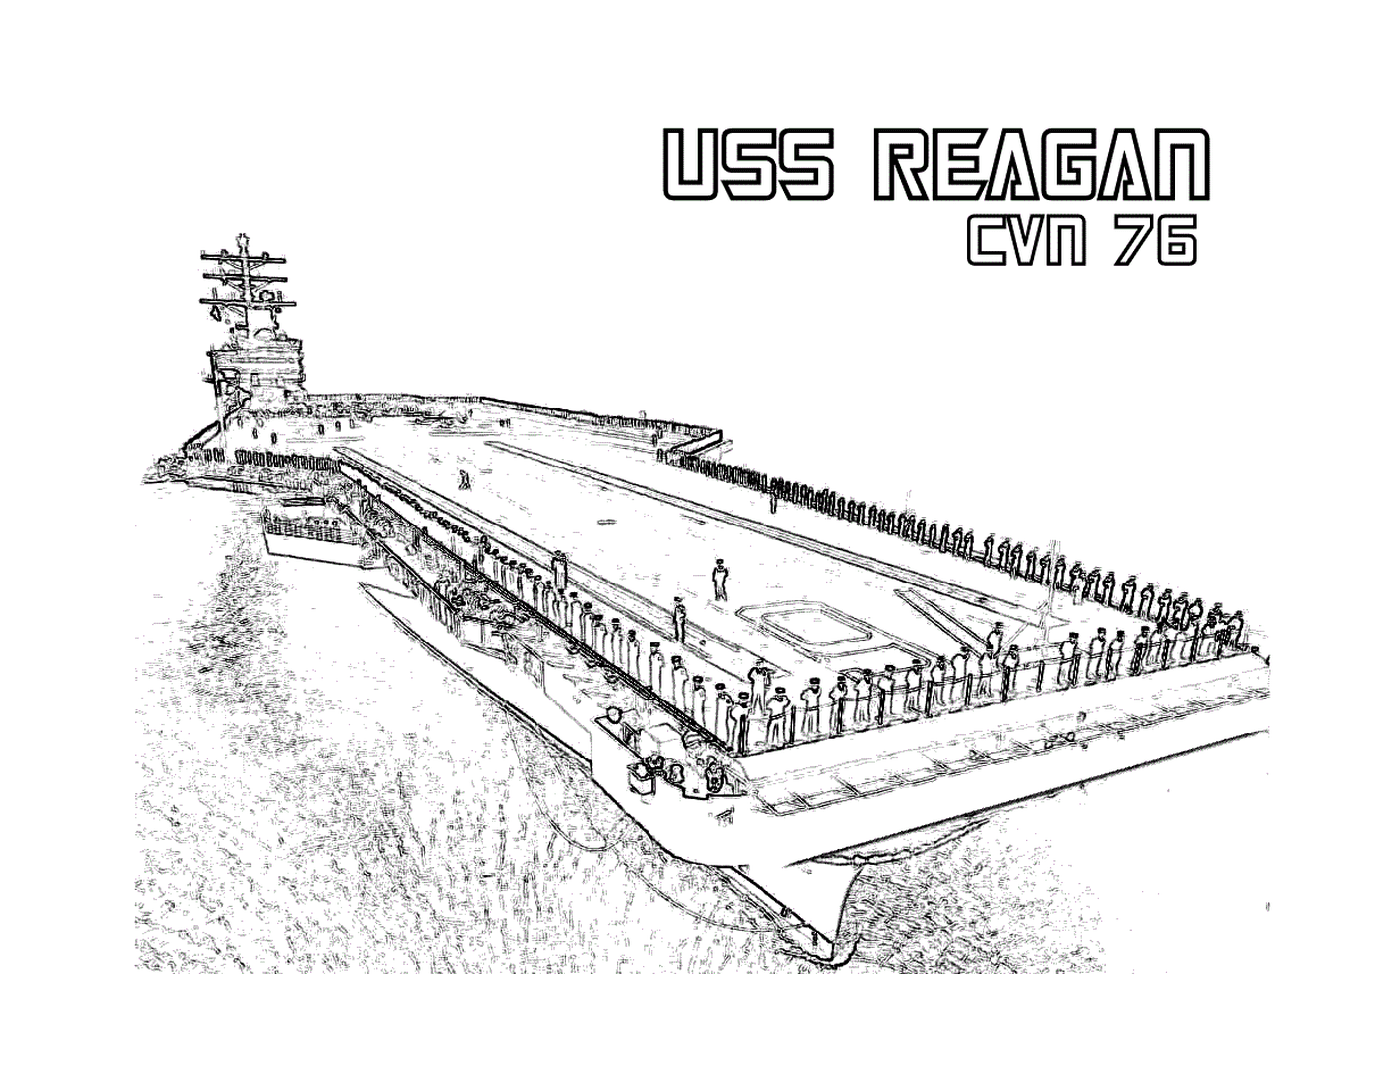   L'USS Reagan CVN-70 